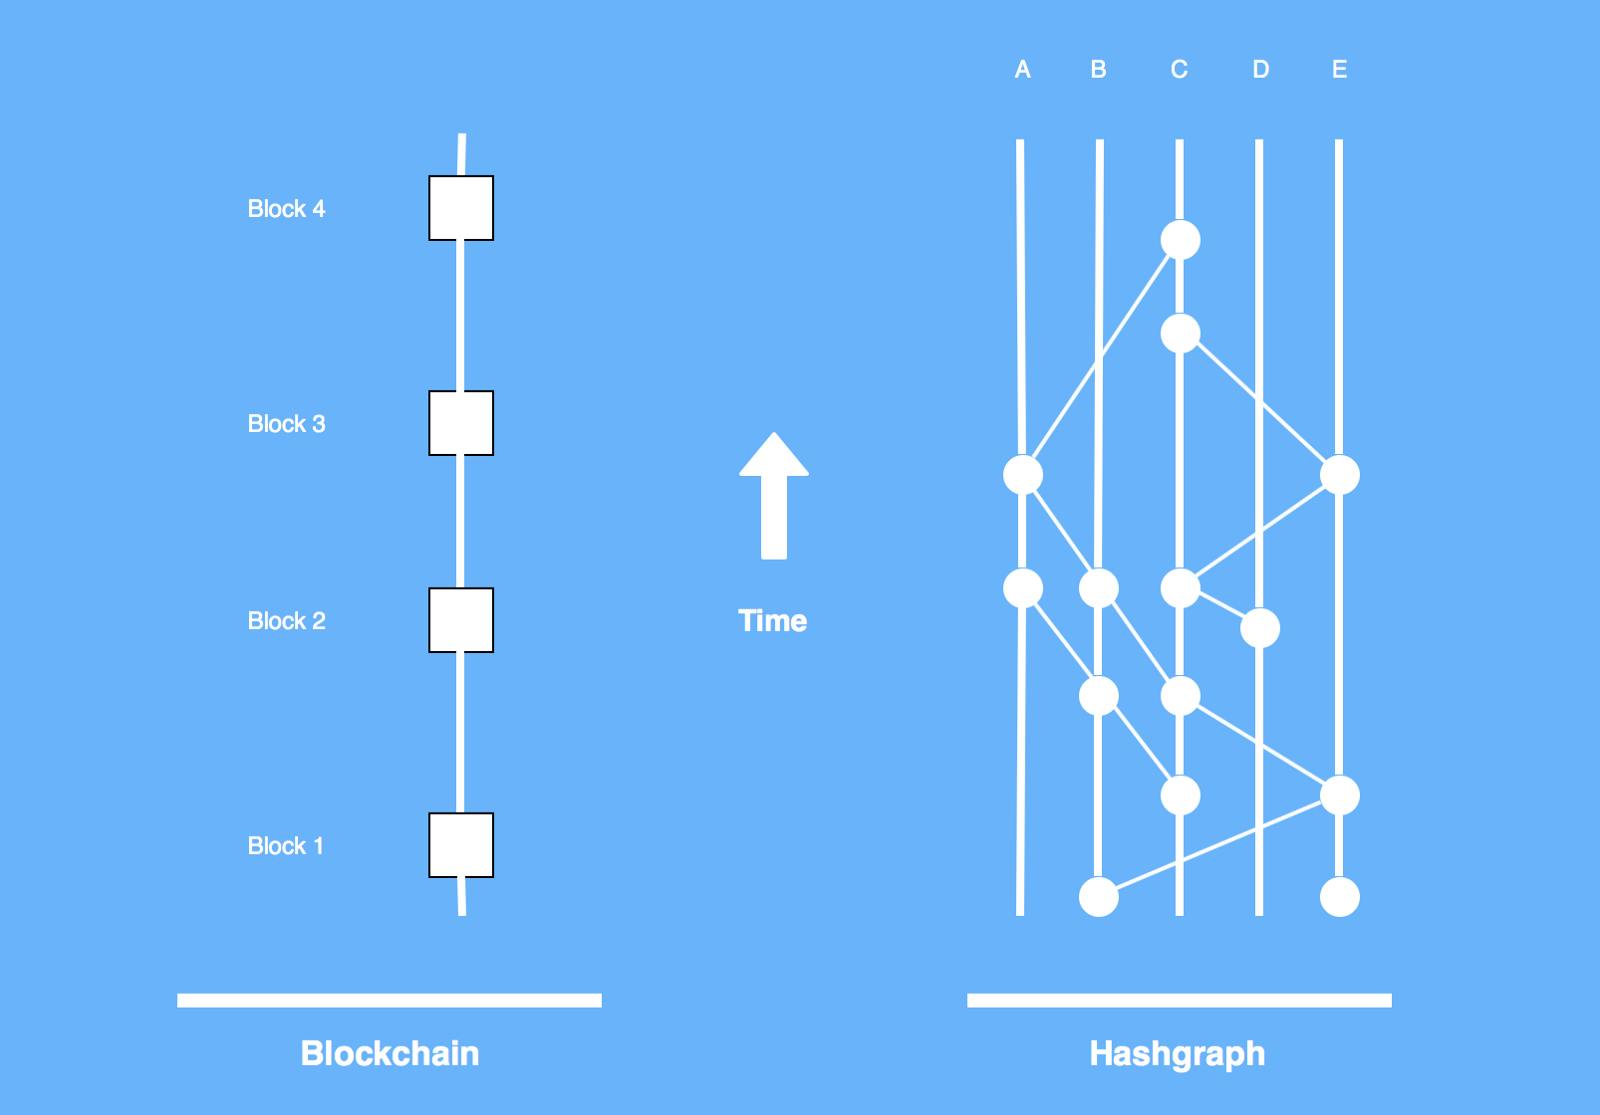 /blockchains-vs-hashgraphs-66a2058c8b43 feature image